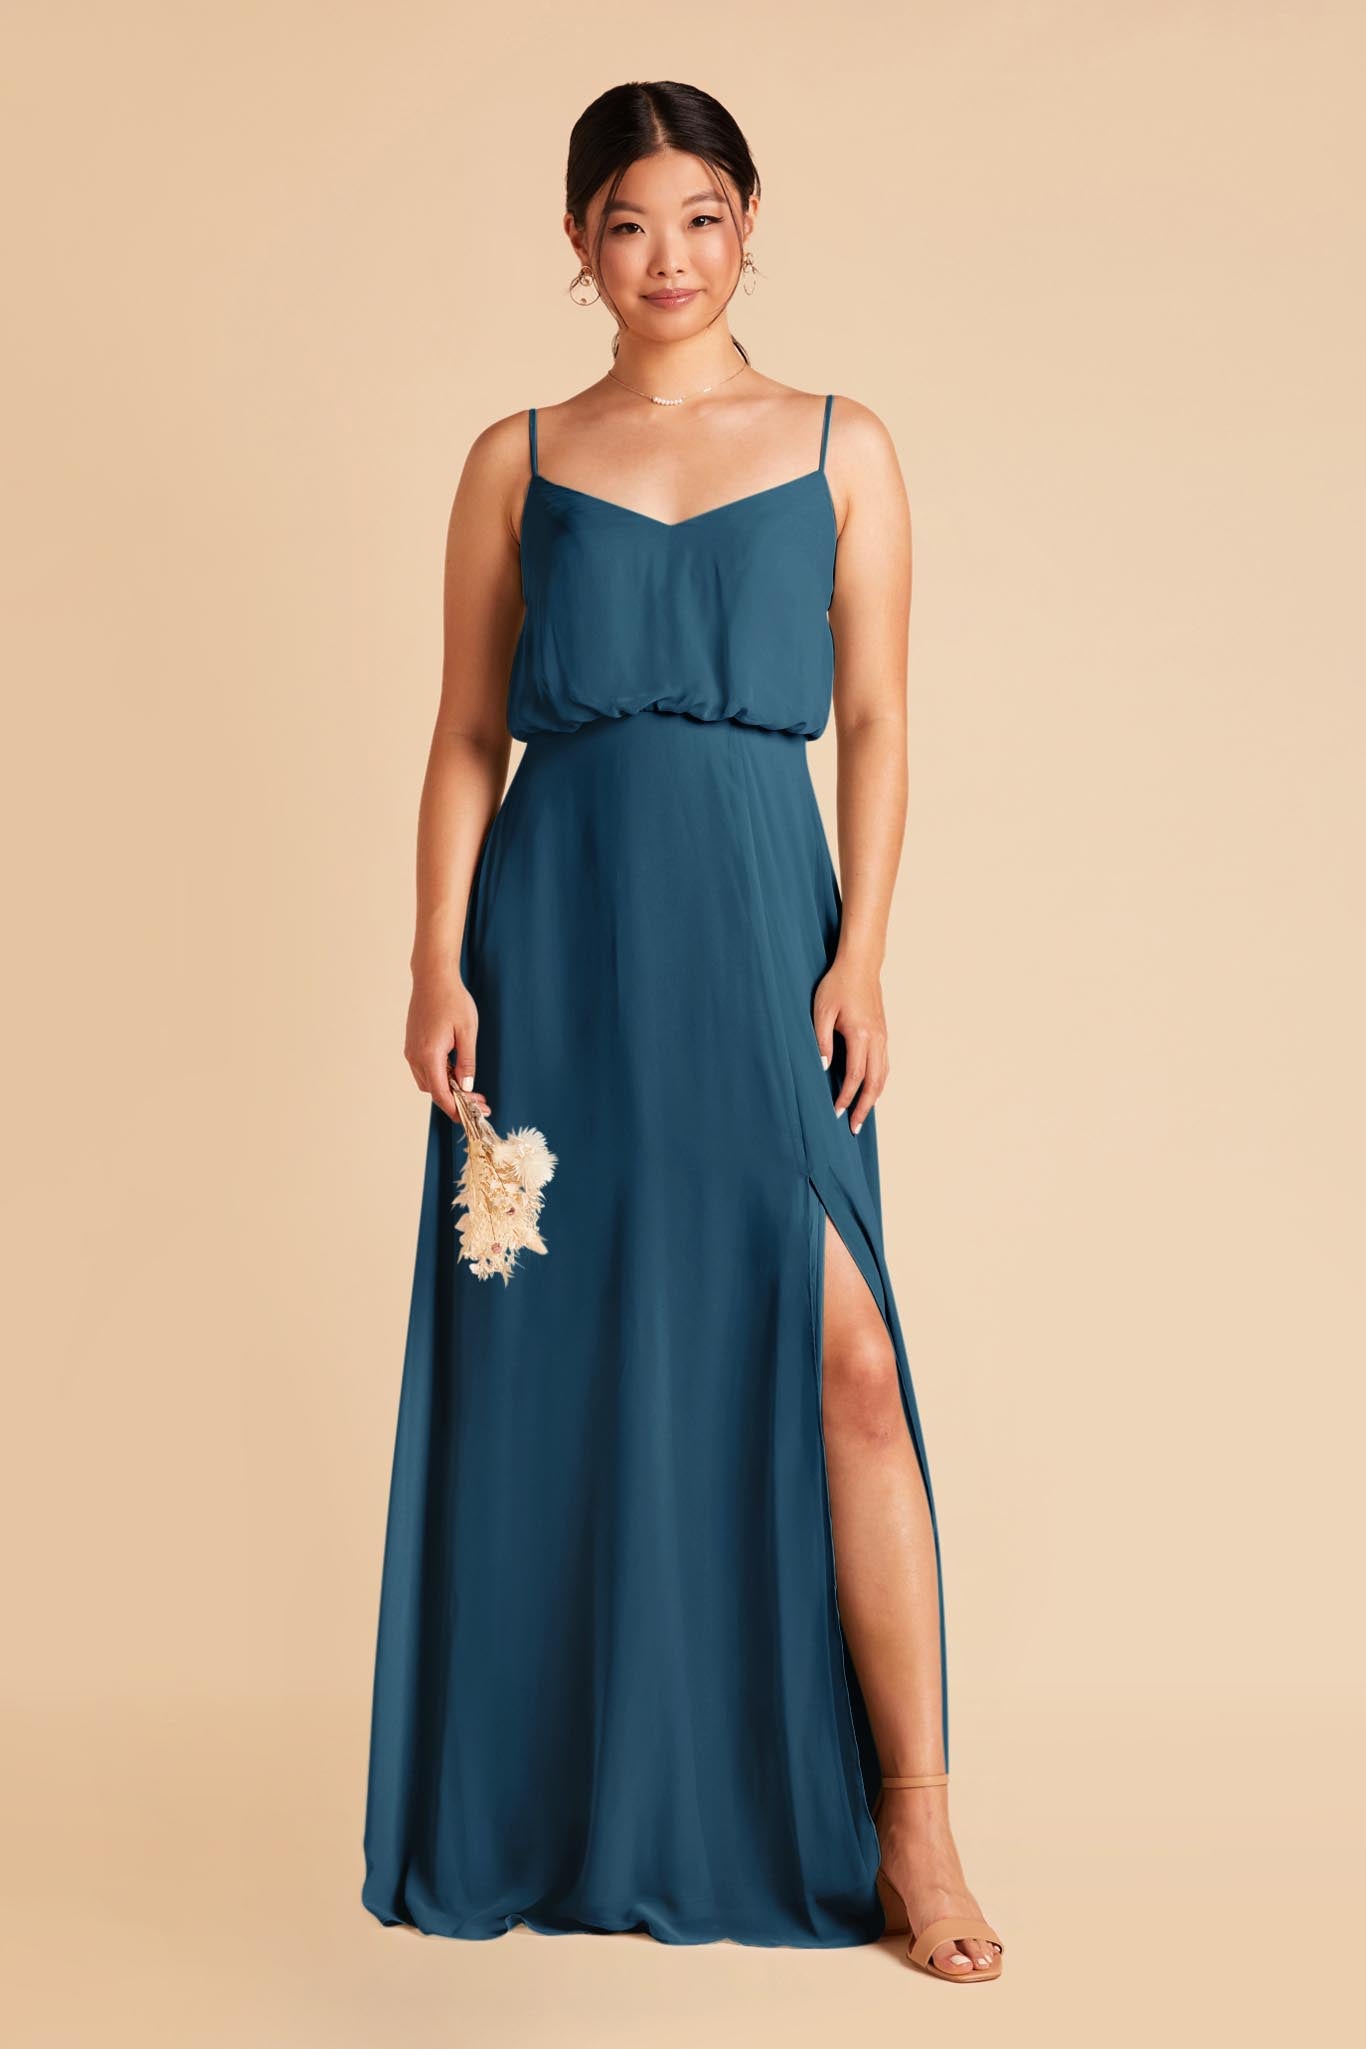 Ocean Blue Gwennie Dress by Birdy Grey